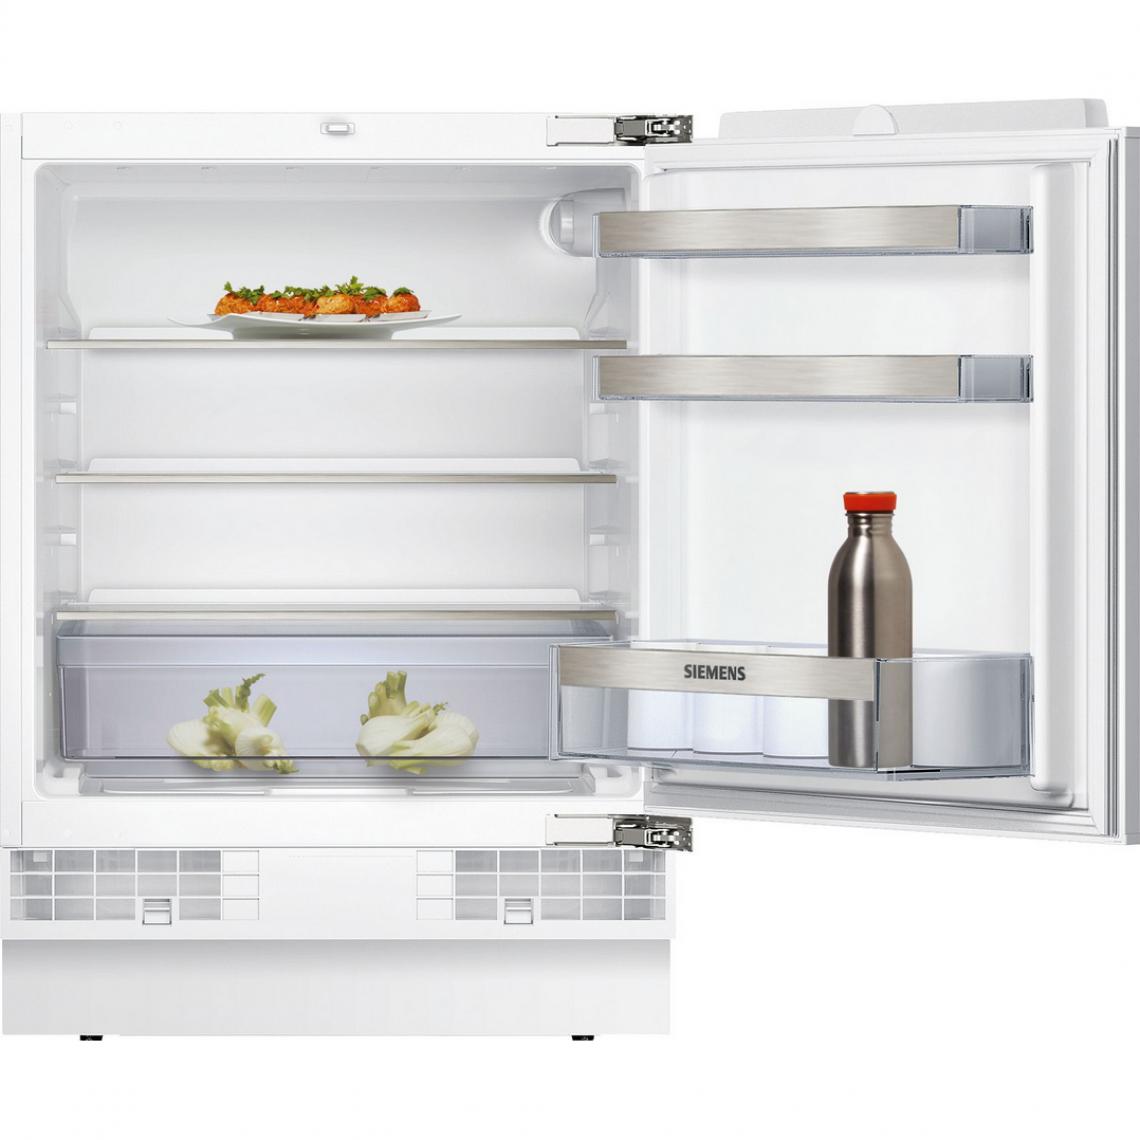 Siemens - siemens - ku15radf0 - Réfrigérateur